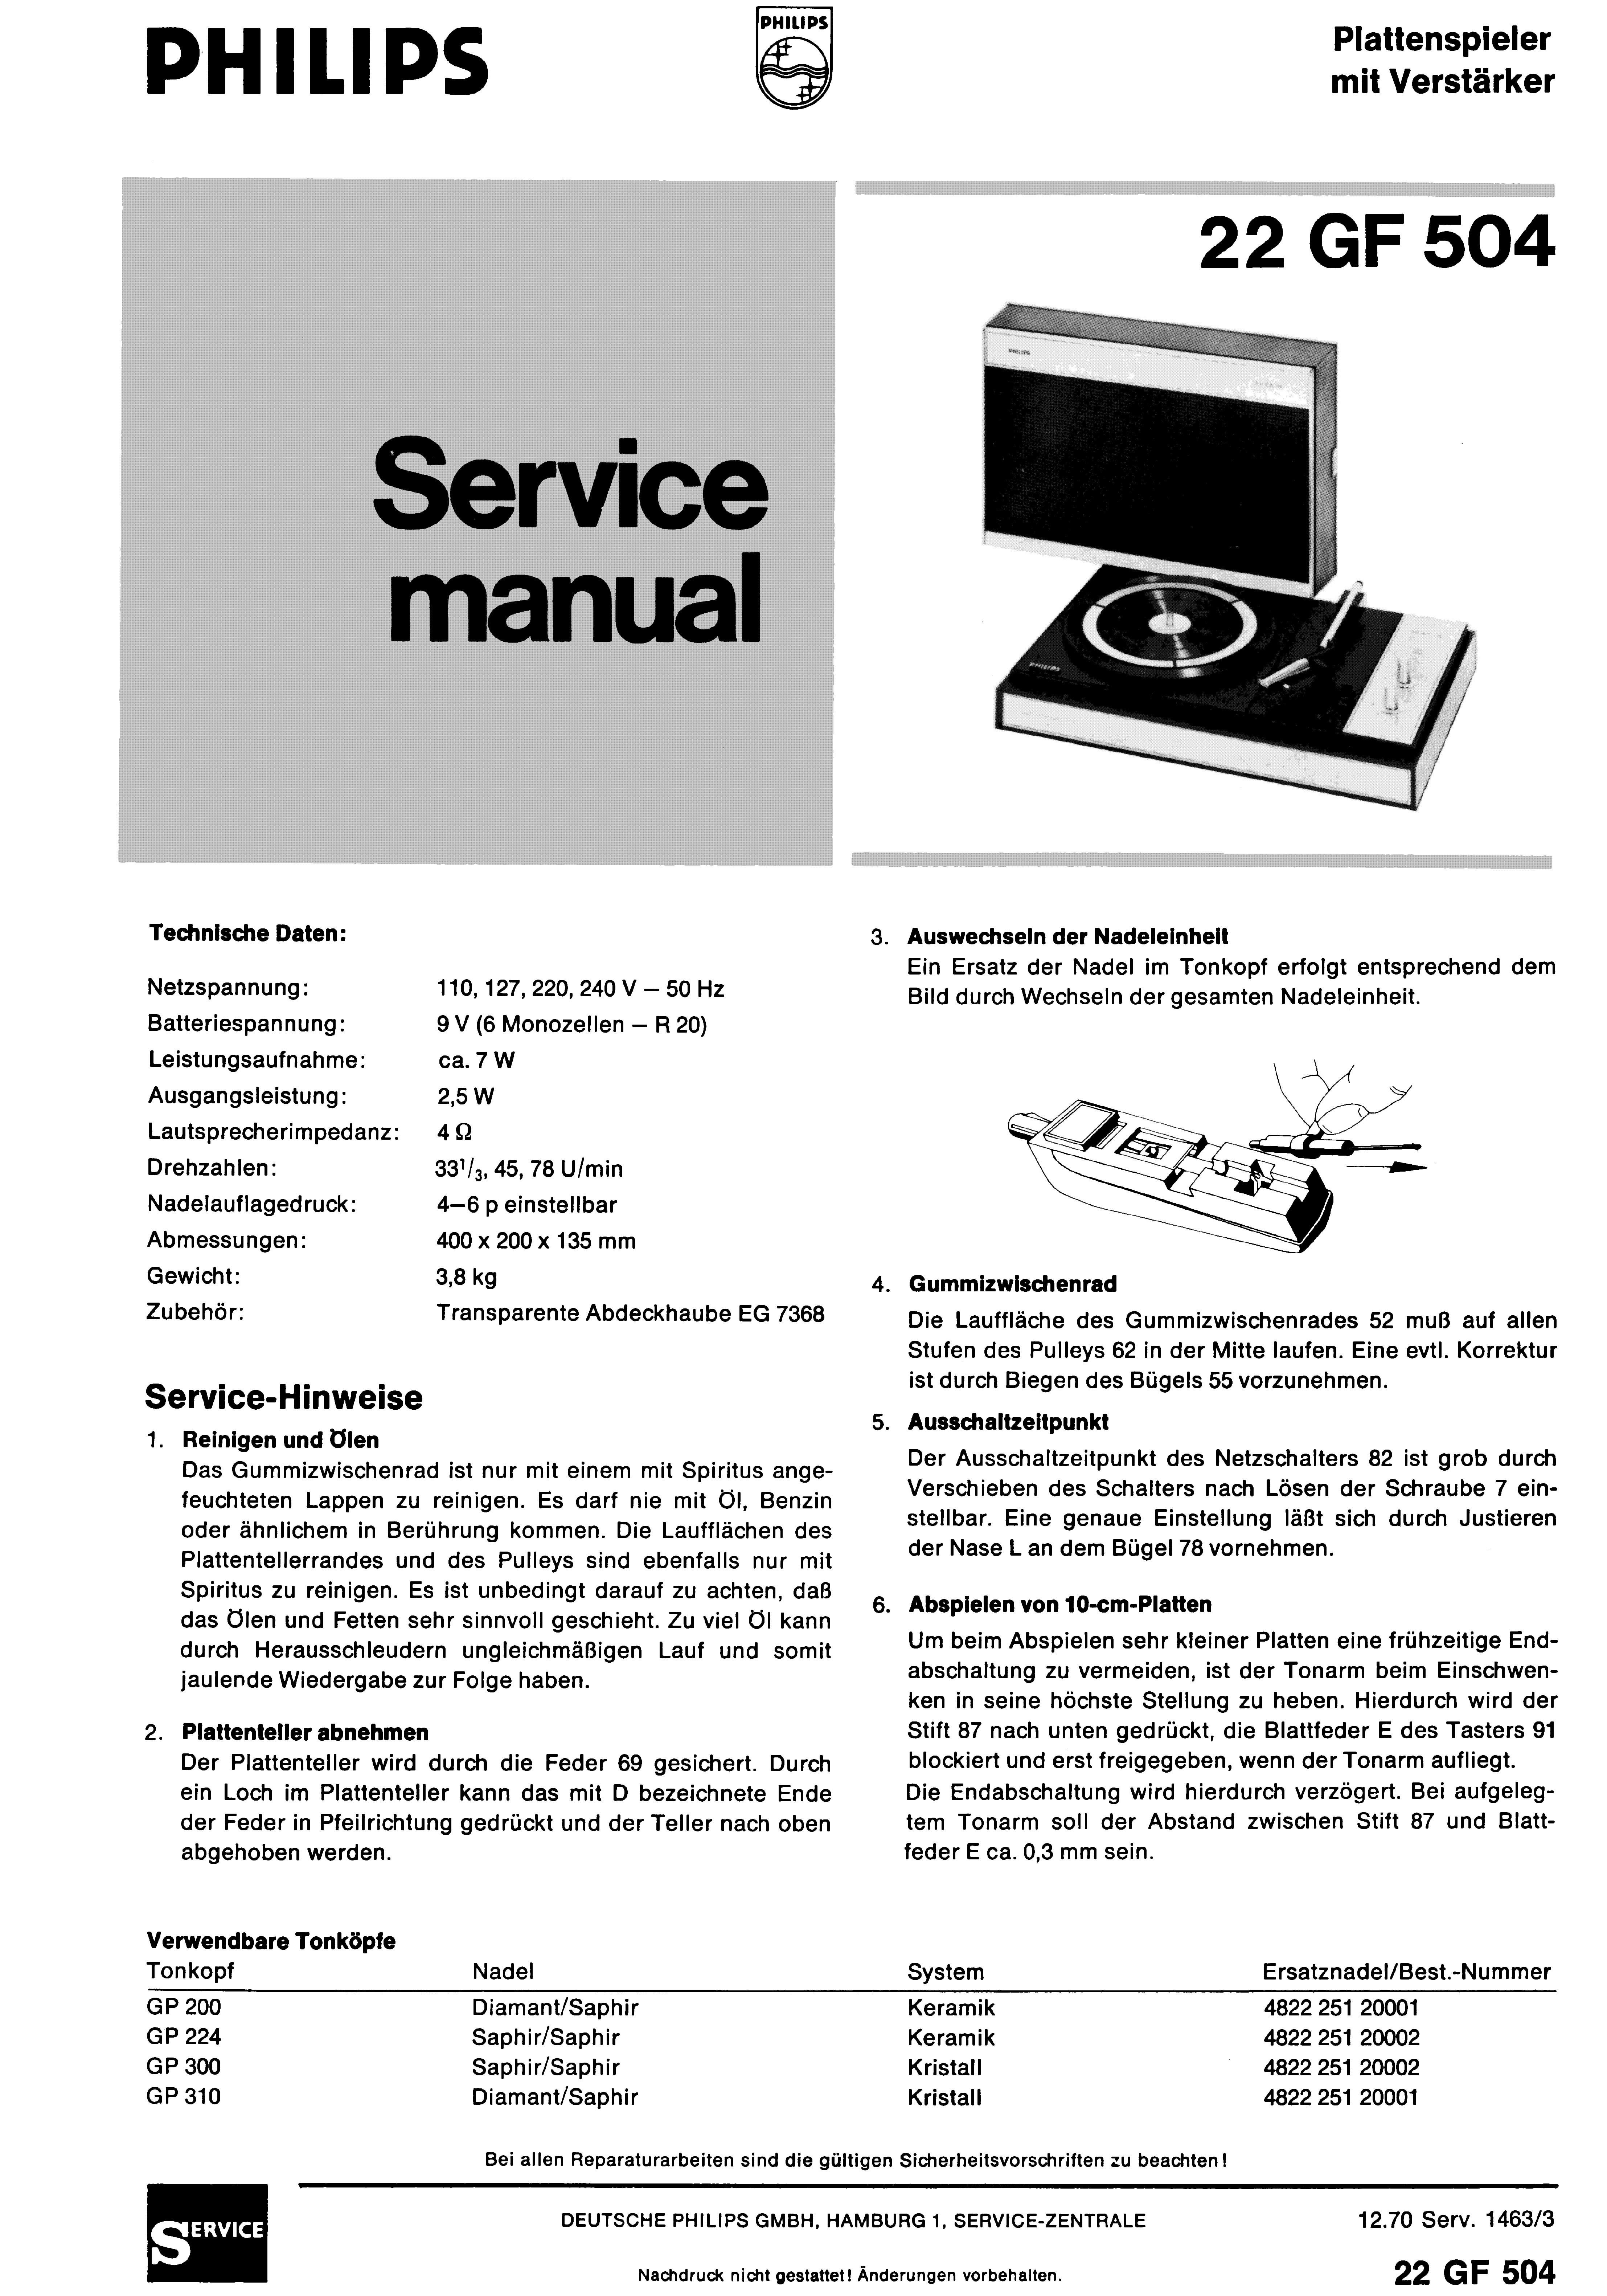 PHILIPS 22GF504 PLATTENSPIELER MIT VERSTAERKER SM service manual (1st page)